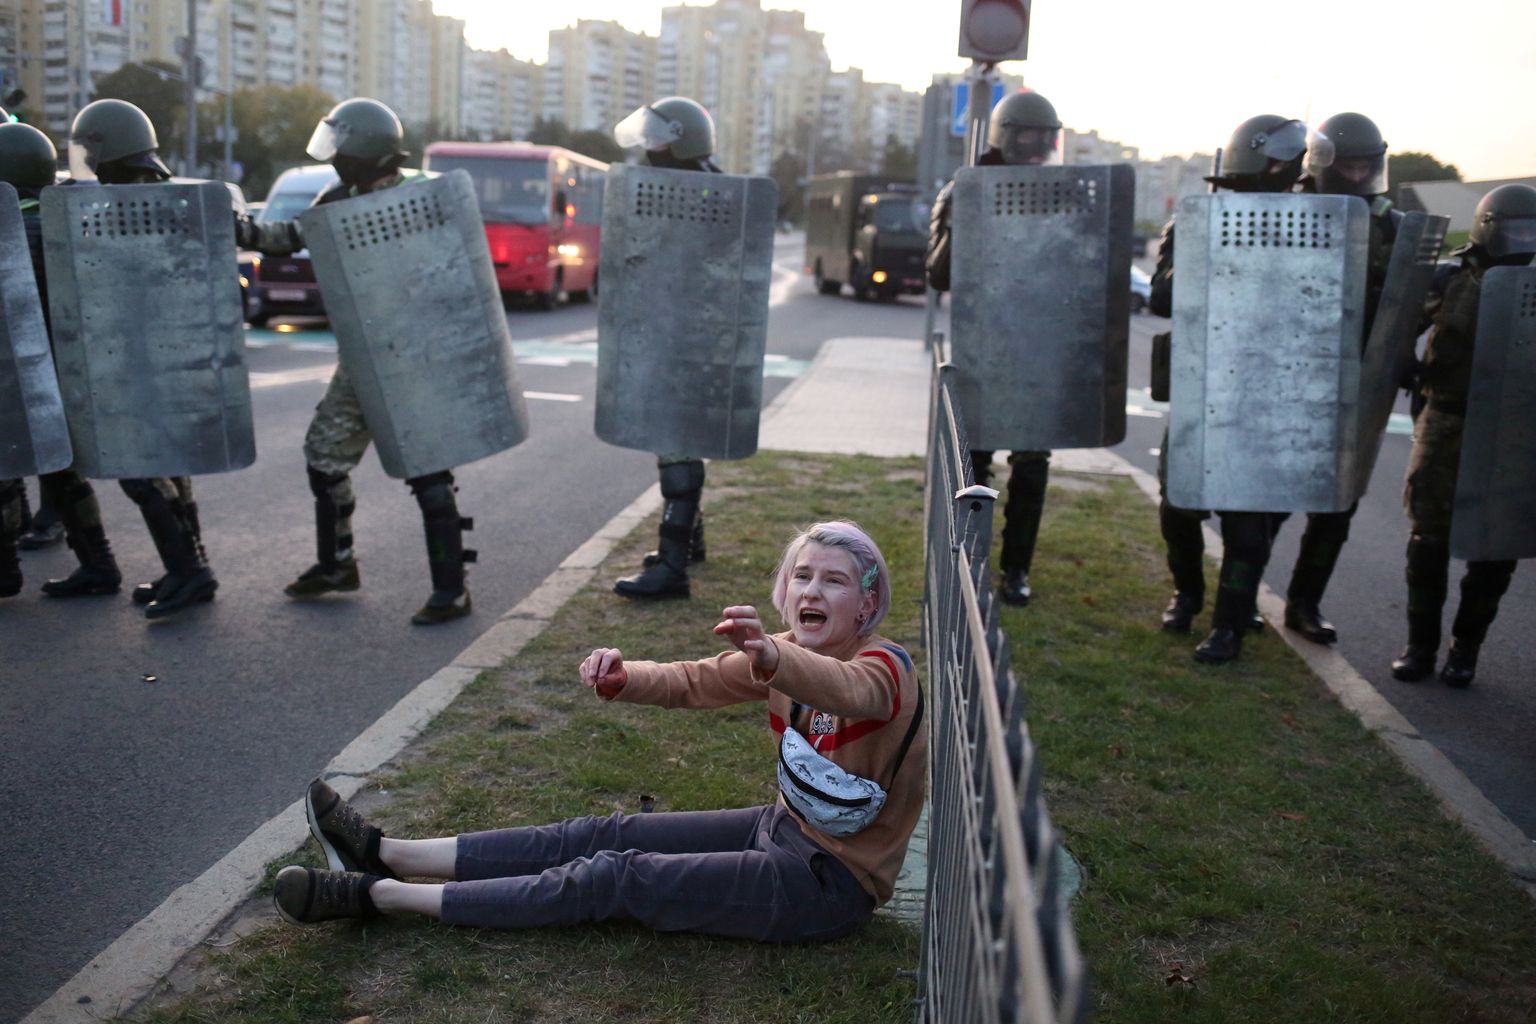 Naine täisvarustustuses miilitsate aheliku ees Minskis eile õhtul. Üle pika aja esimest korda avaldasid protestijad miilitsale vastupanu ning kohati läksid lausa ise rünnakule.